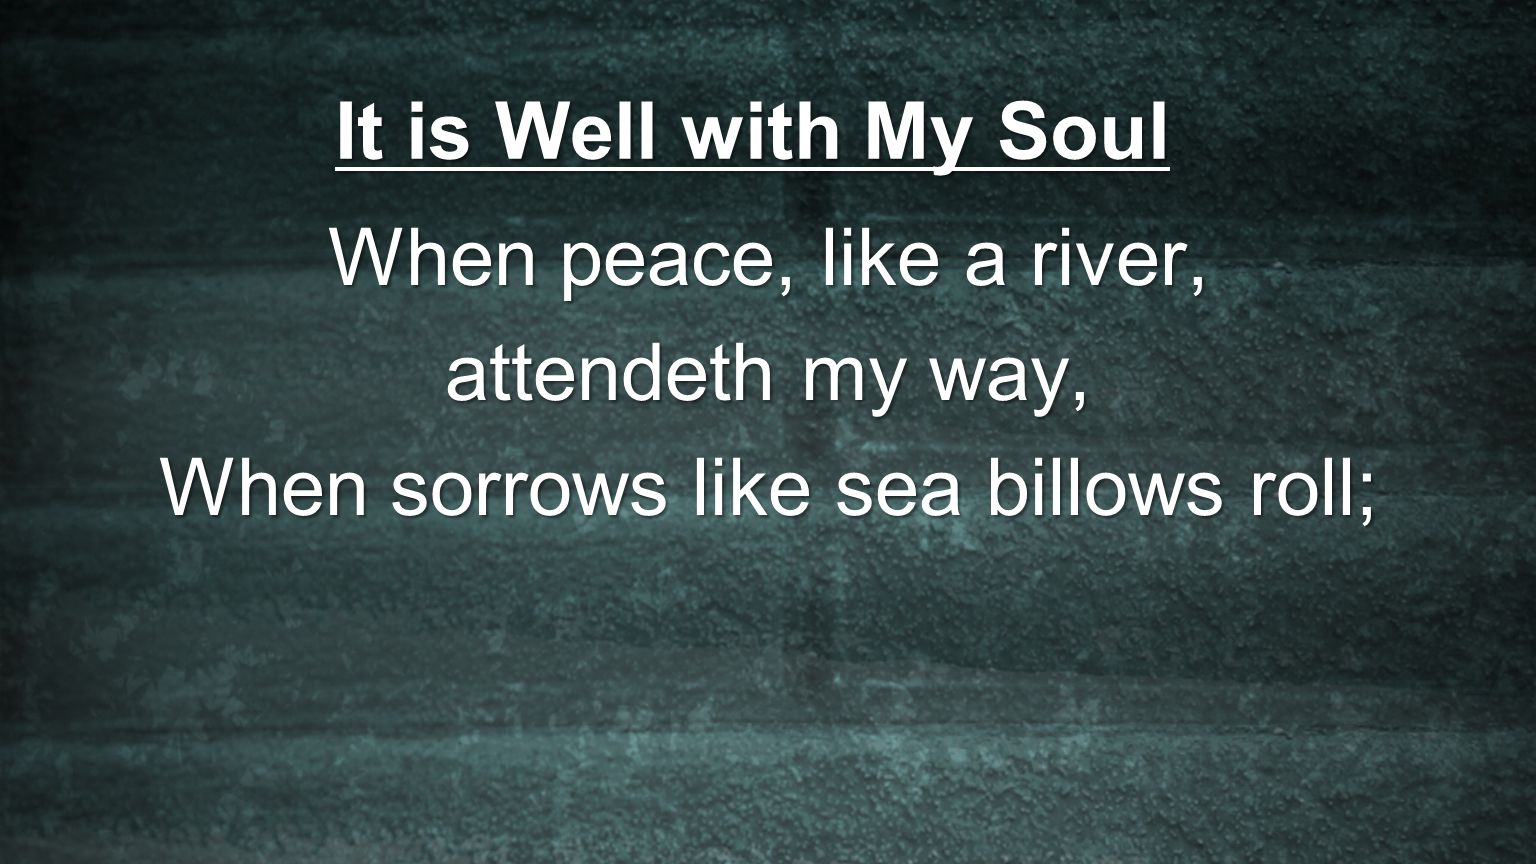 When sorrows like sea billows roll;